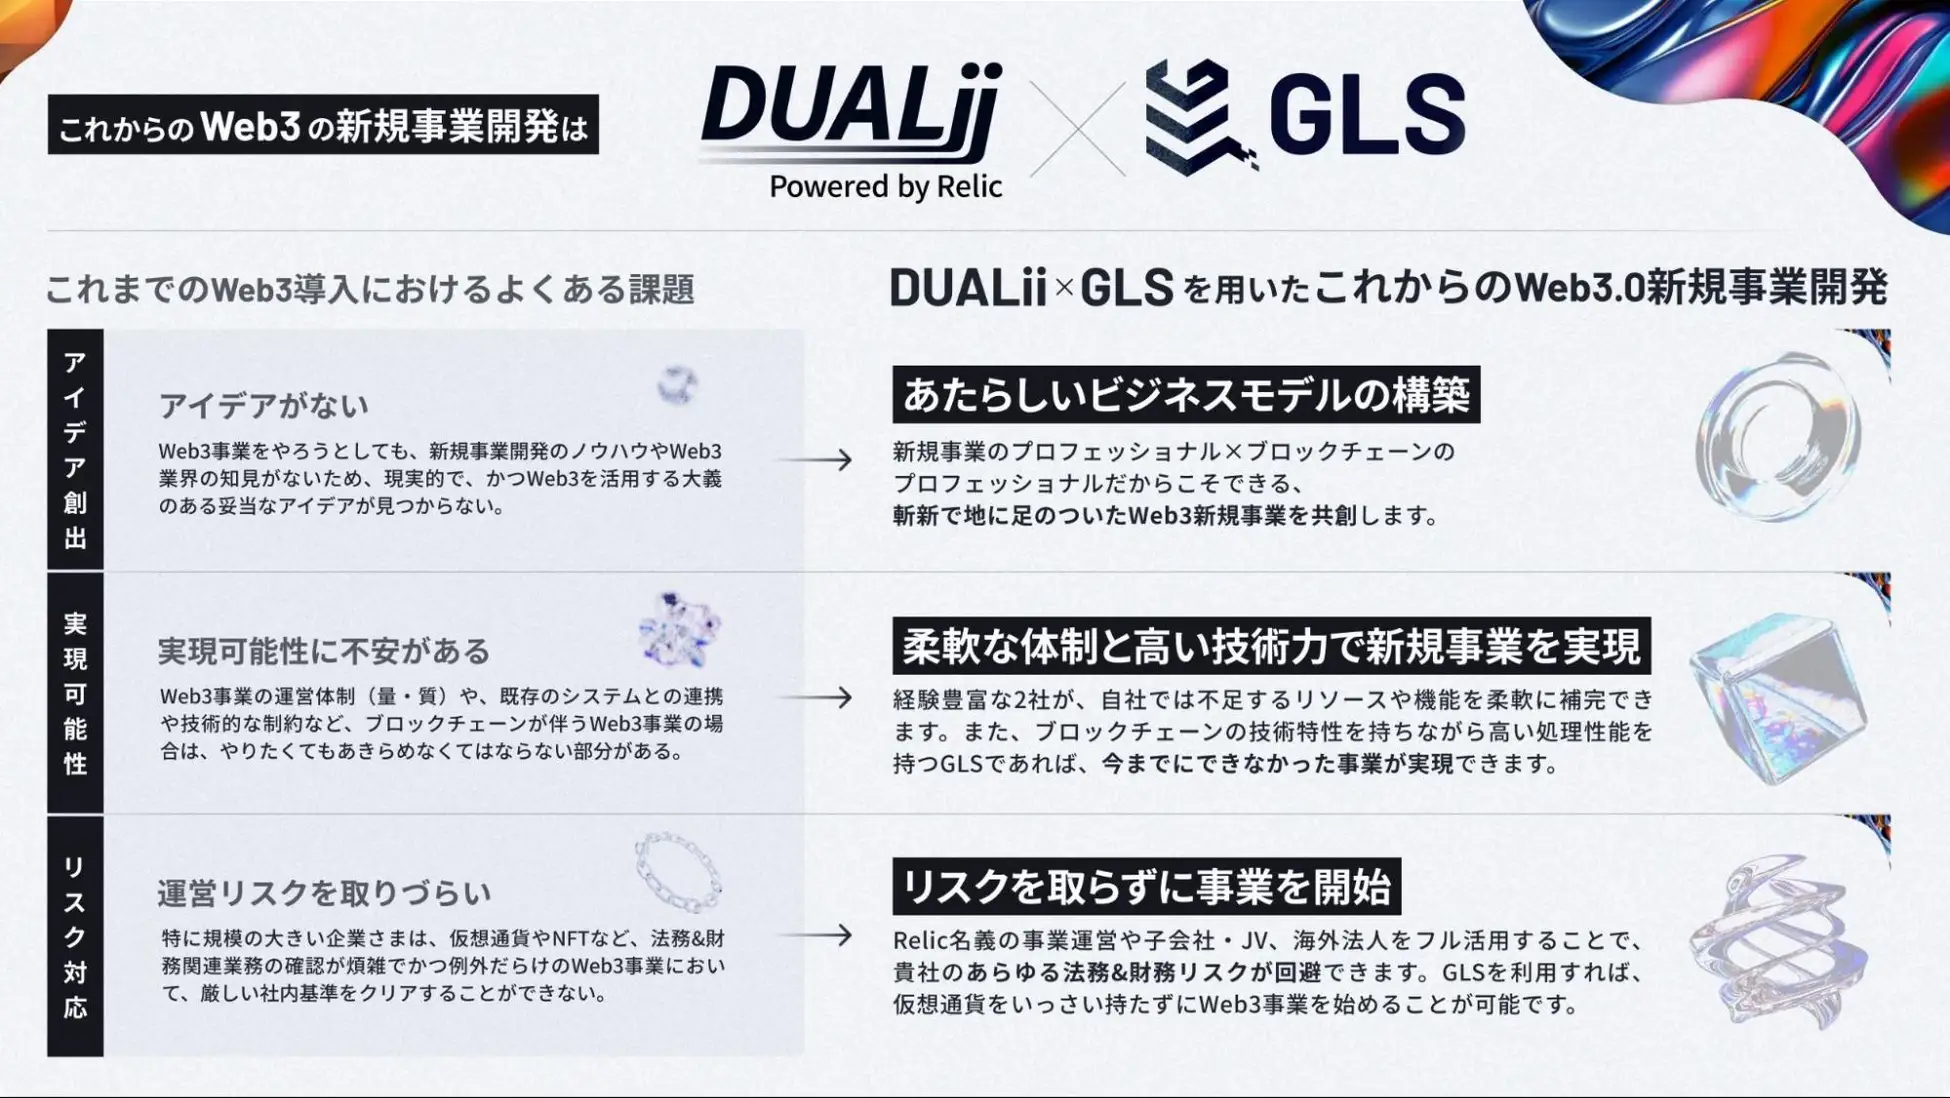 DUALii x GLSによる共同事業開発支援